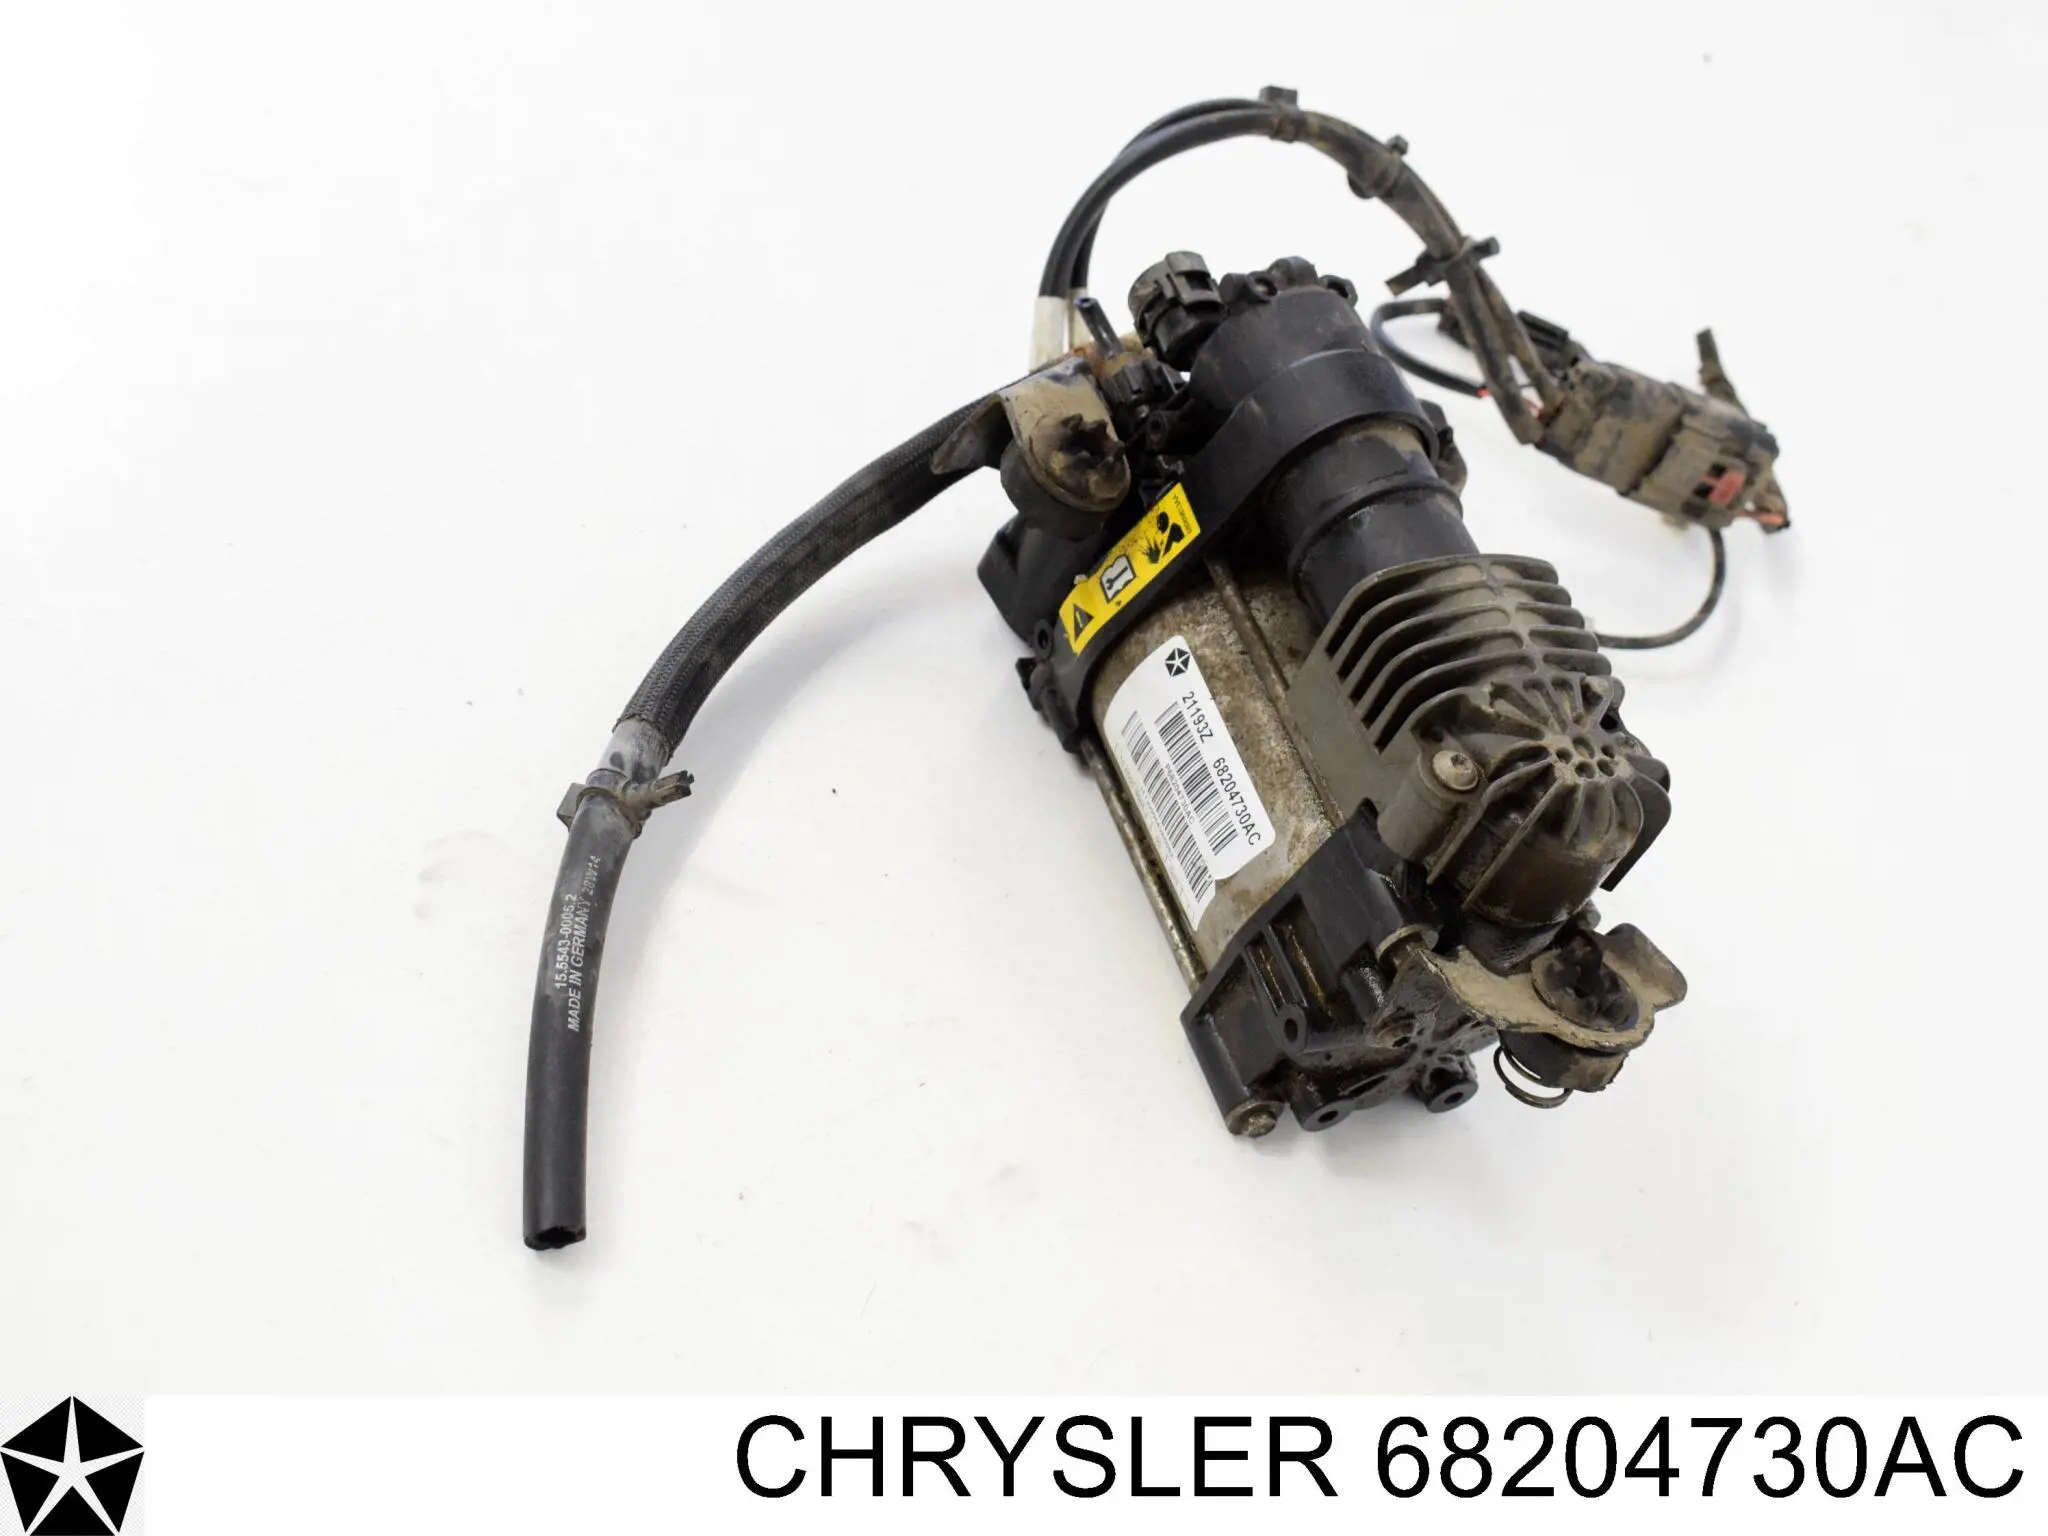 68204730AC Chrysler compressor de bombeio pneumático (de amortecedores)